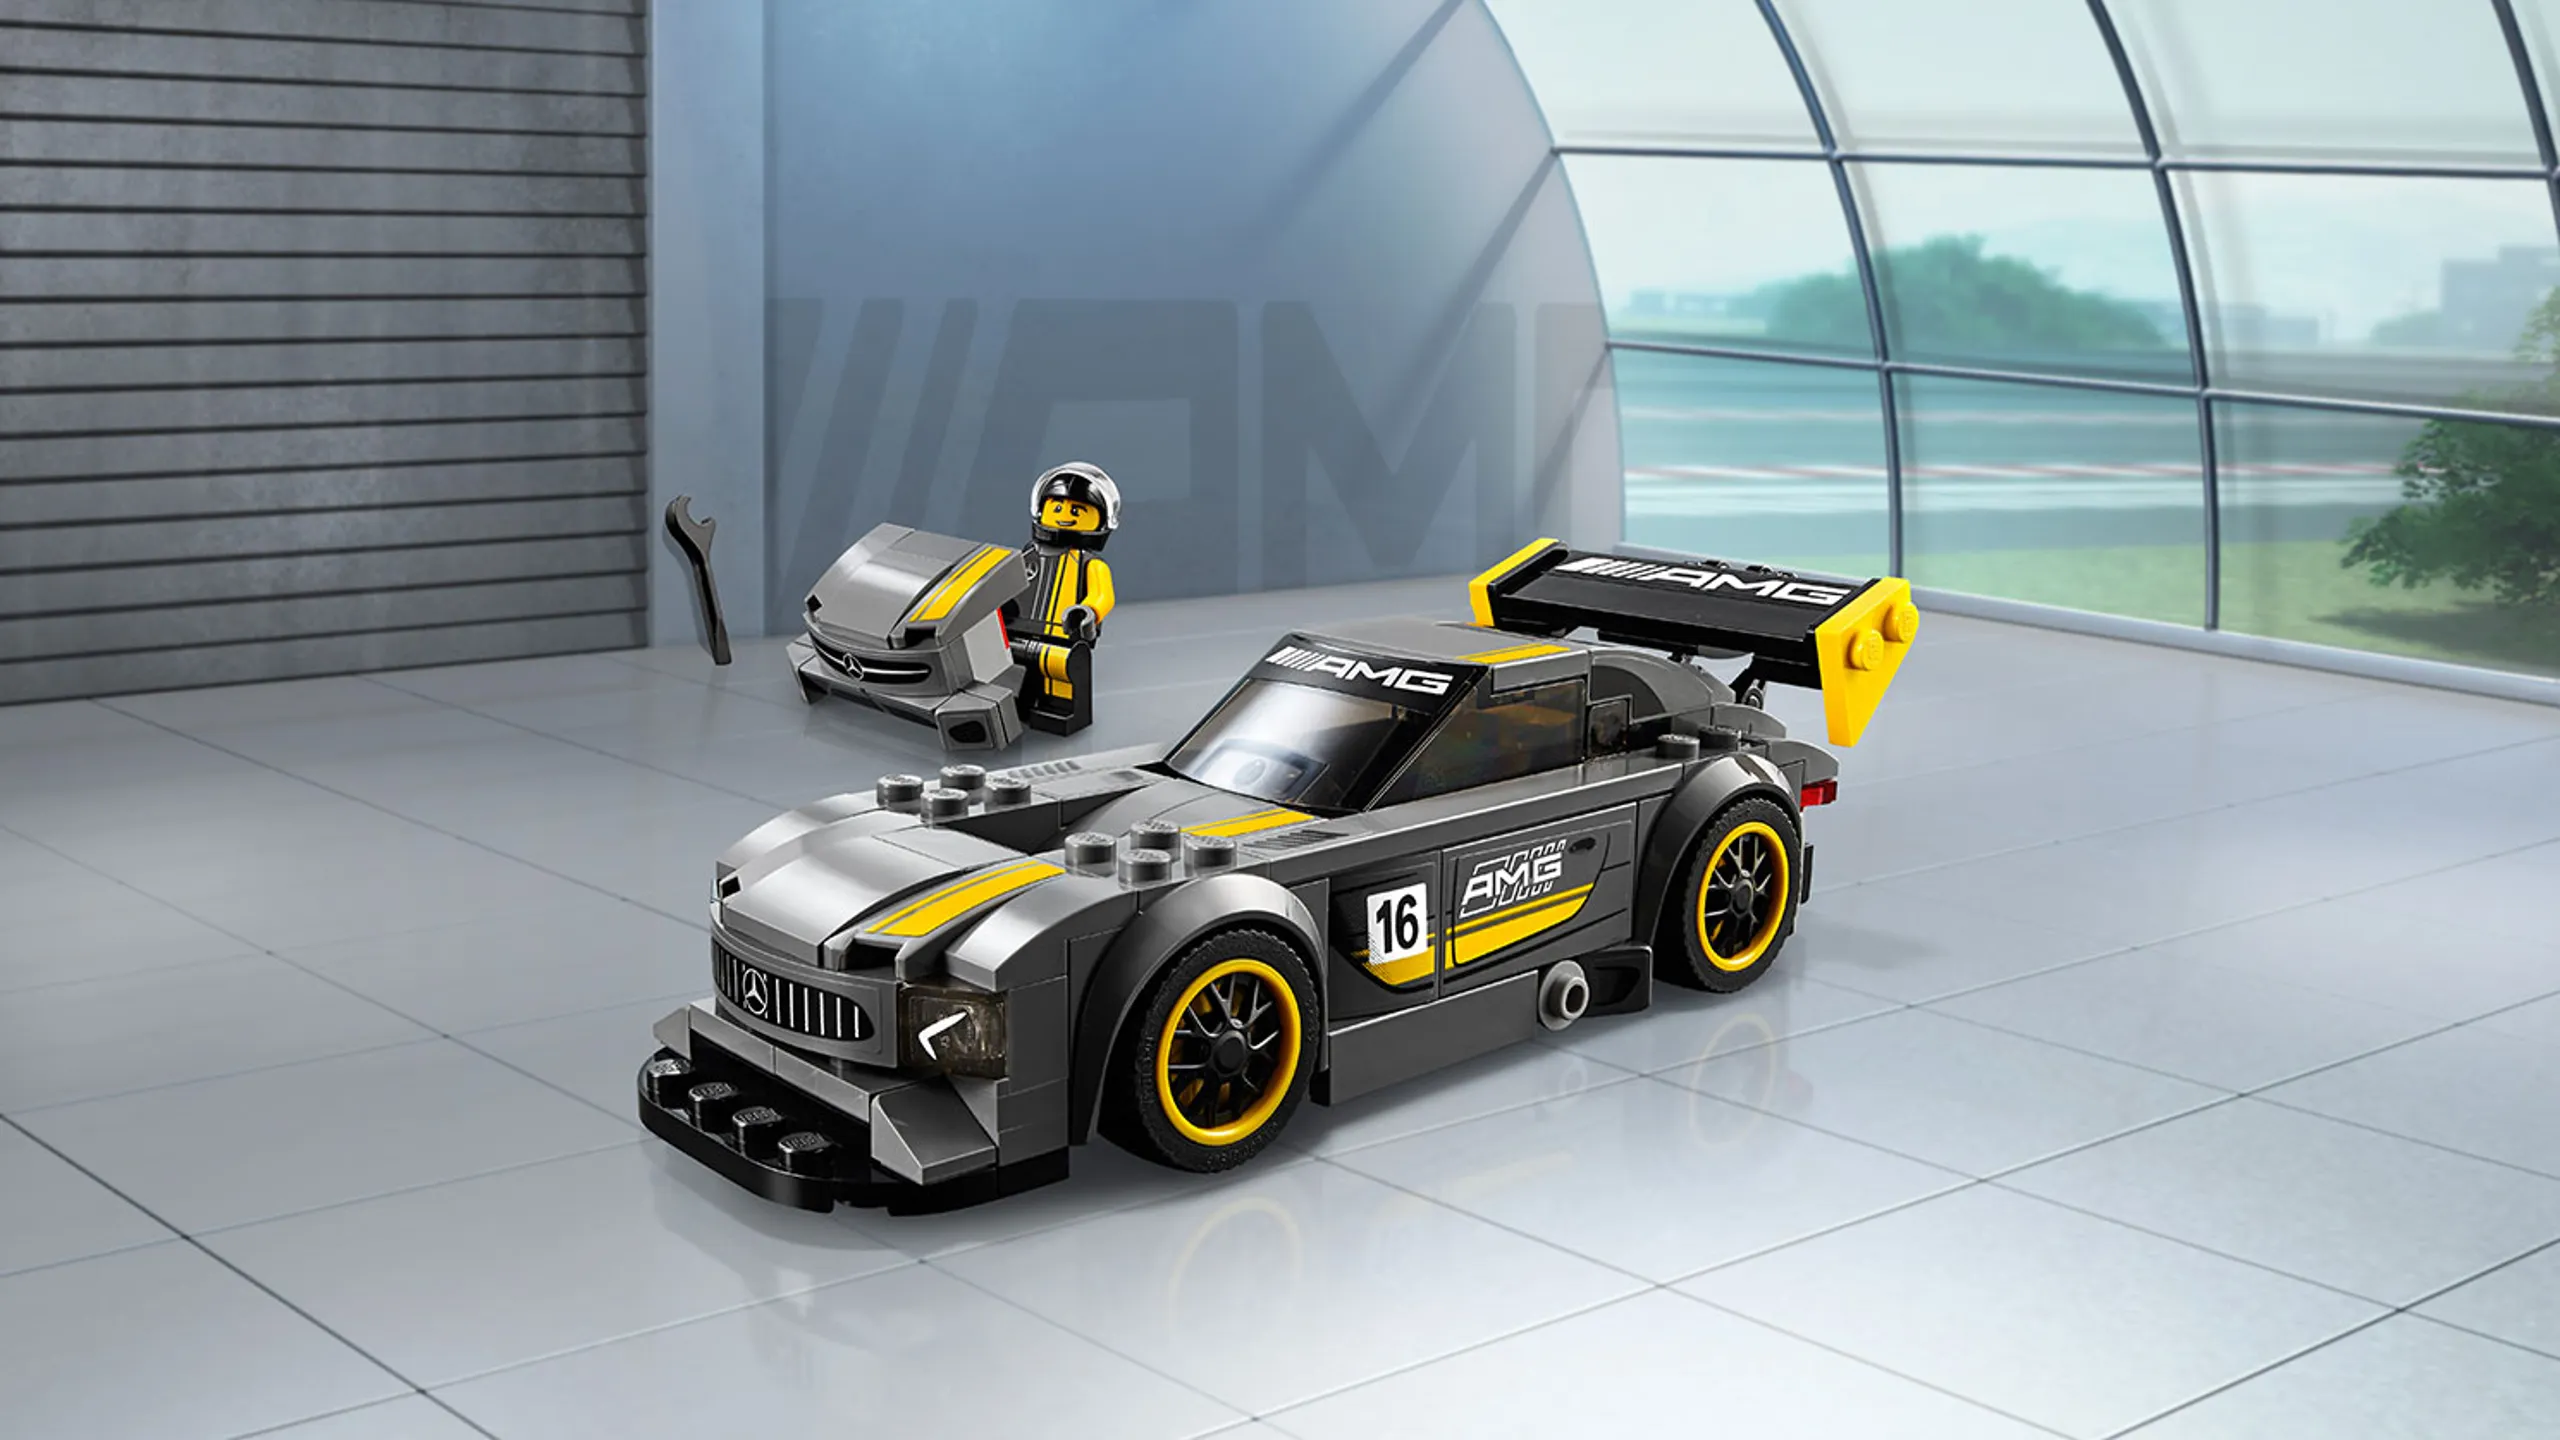 MERCEDES AMG PETRONAS Formula One™ Team - Videos - LEGO.com for kids